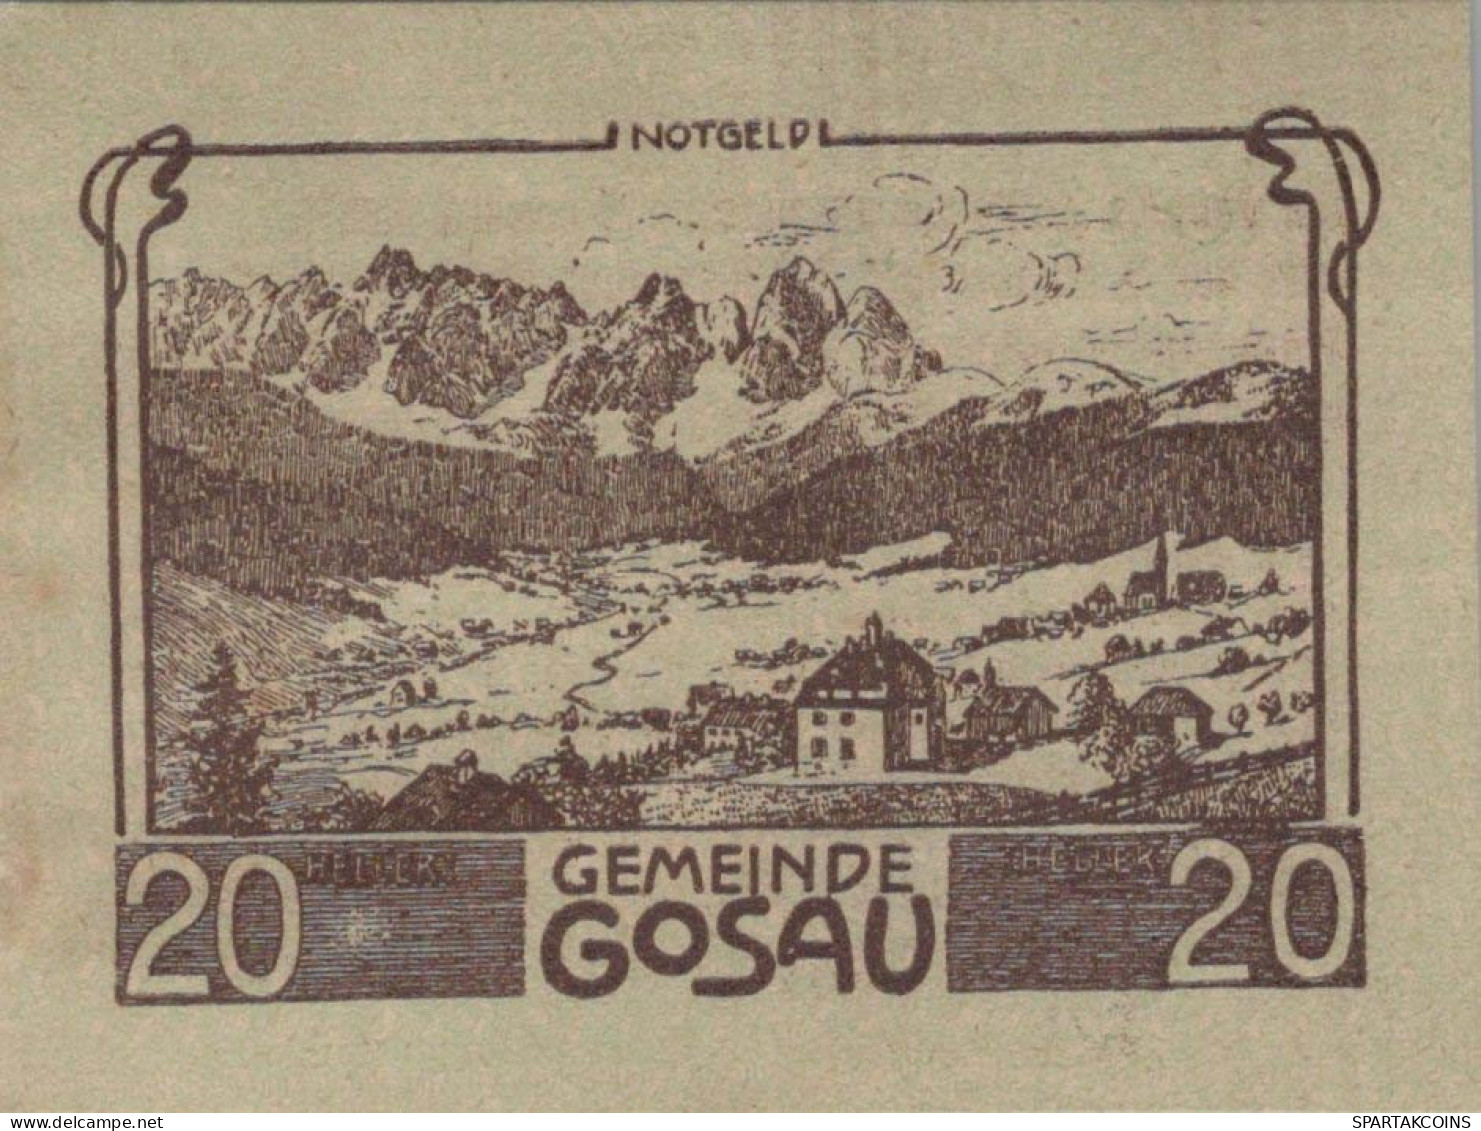 20 HELLER 1920 Stadt GOSAU Oberösterreich Österreich Notgeld Banknote #PE917 - Lokale Ausgaben